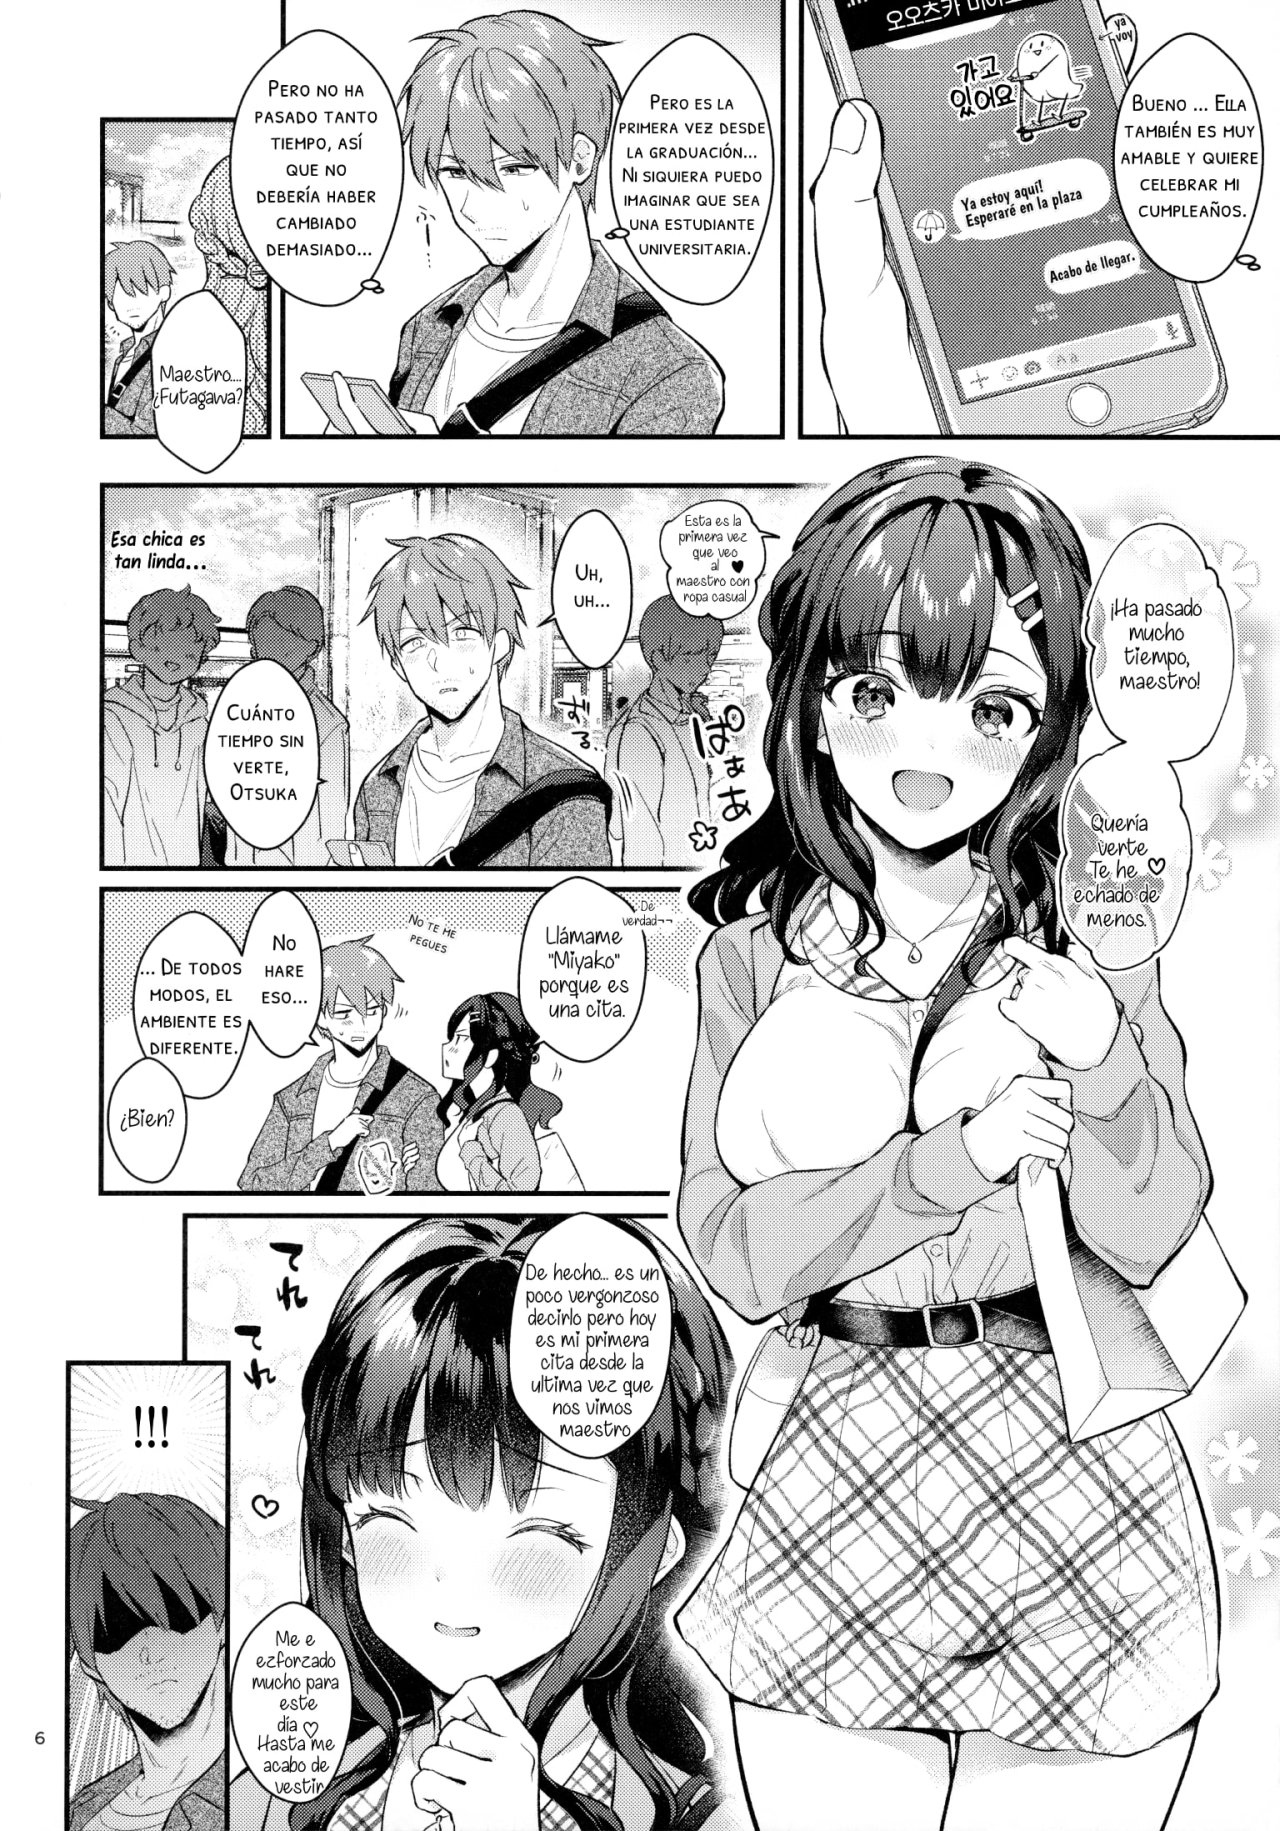 Sunshower-JK Miyako no Valentine Manga 3 - 4